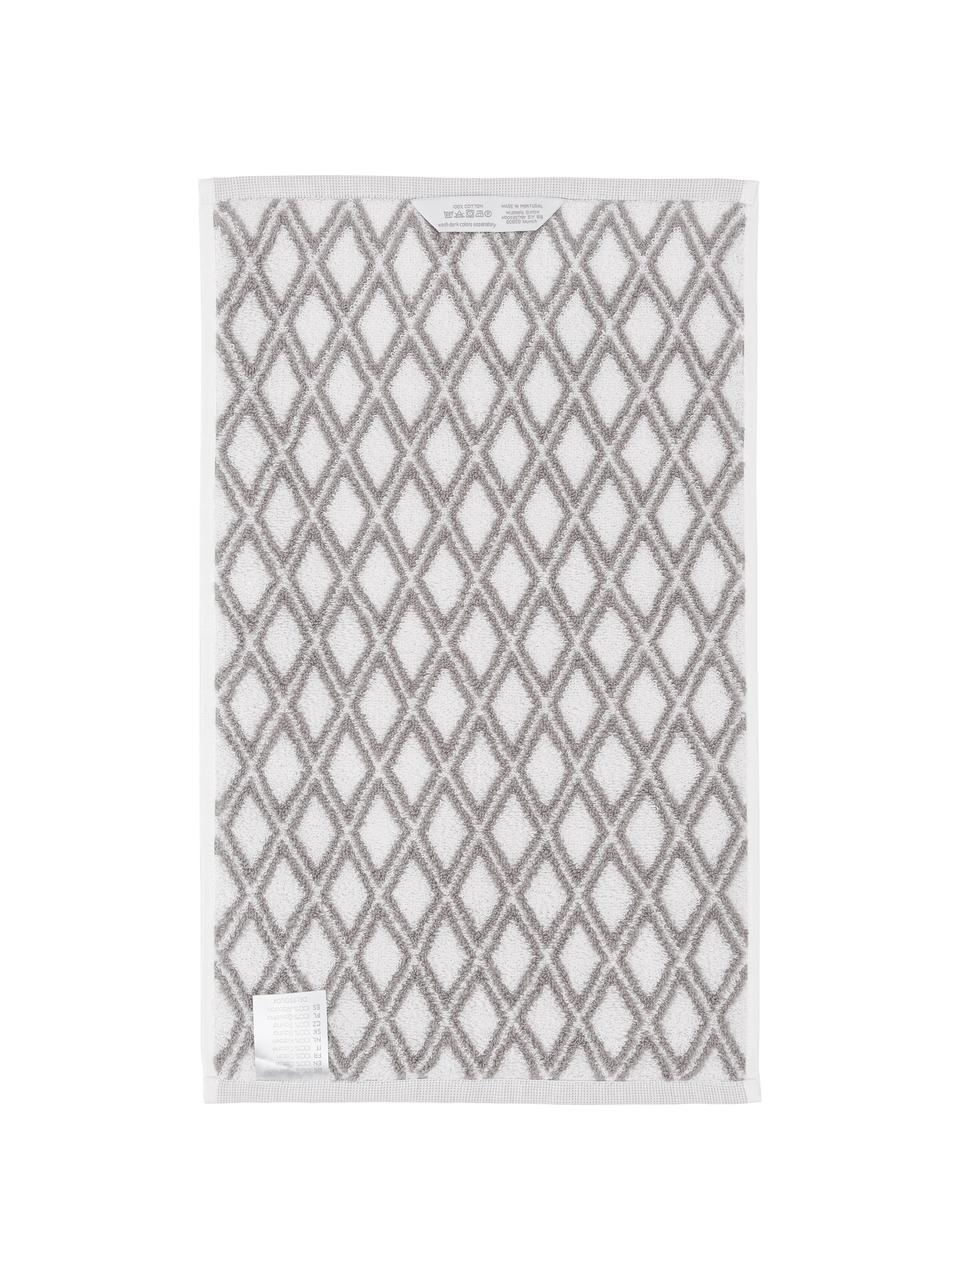 Wende-Handtuch Ava mit grafischem Muster, Taupe, Cremeweiss, Handtuch, B 50 x L 100 cm, 2 Stück